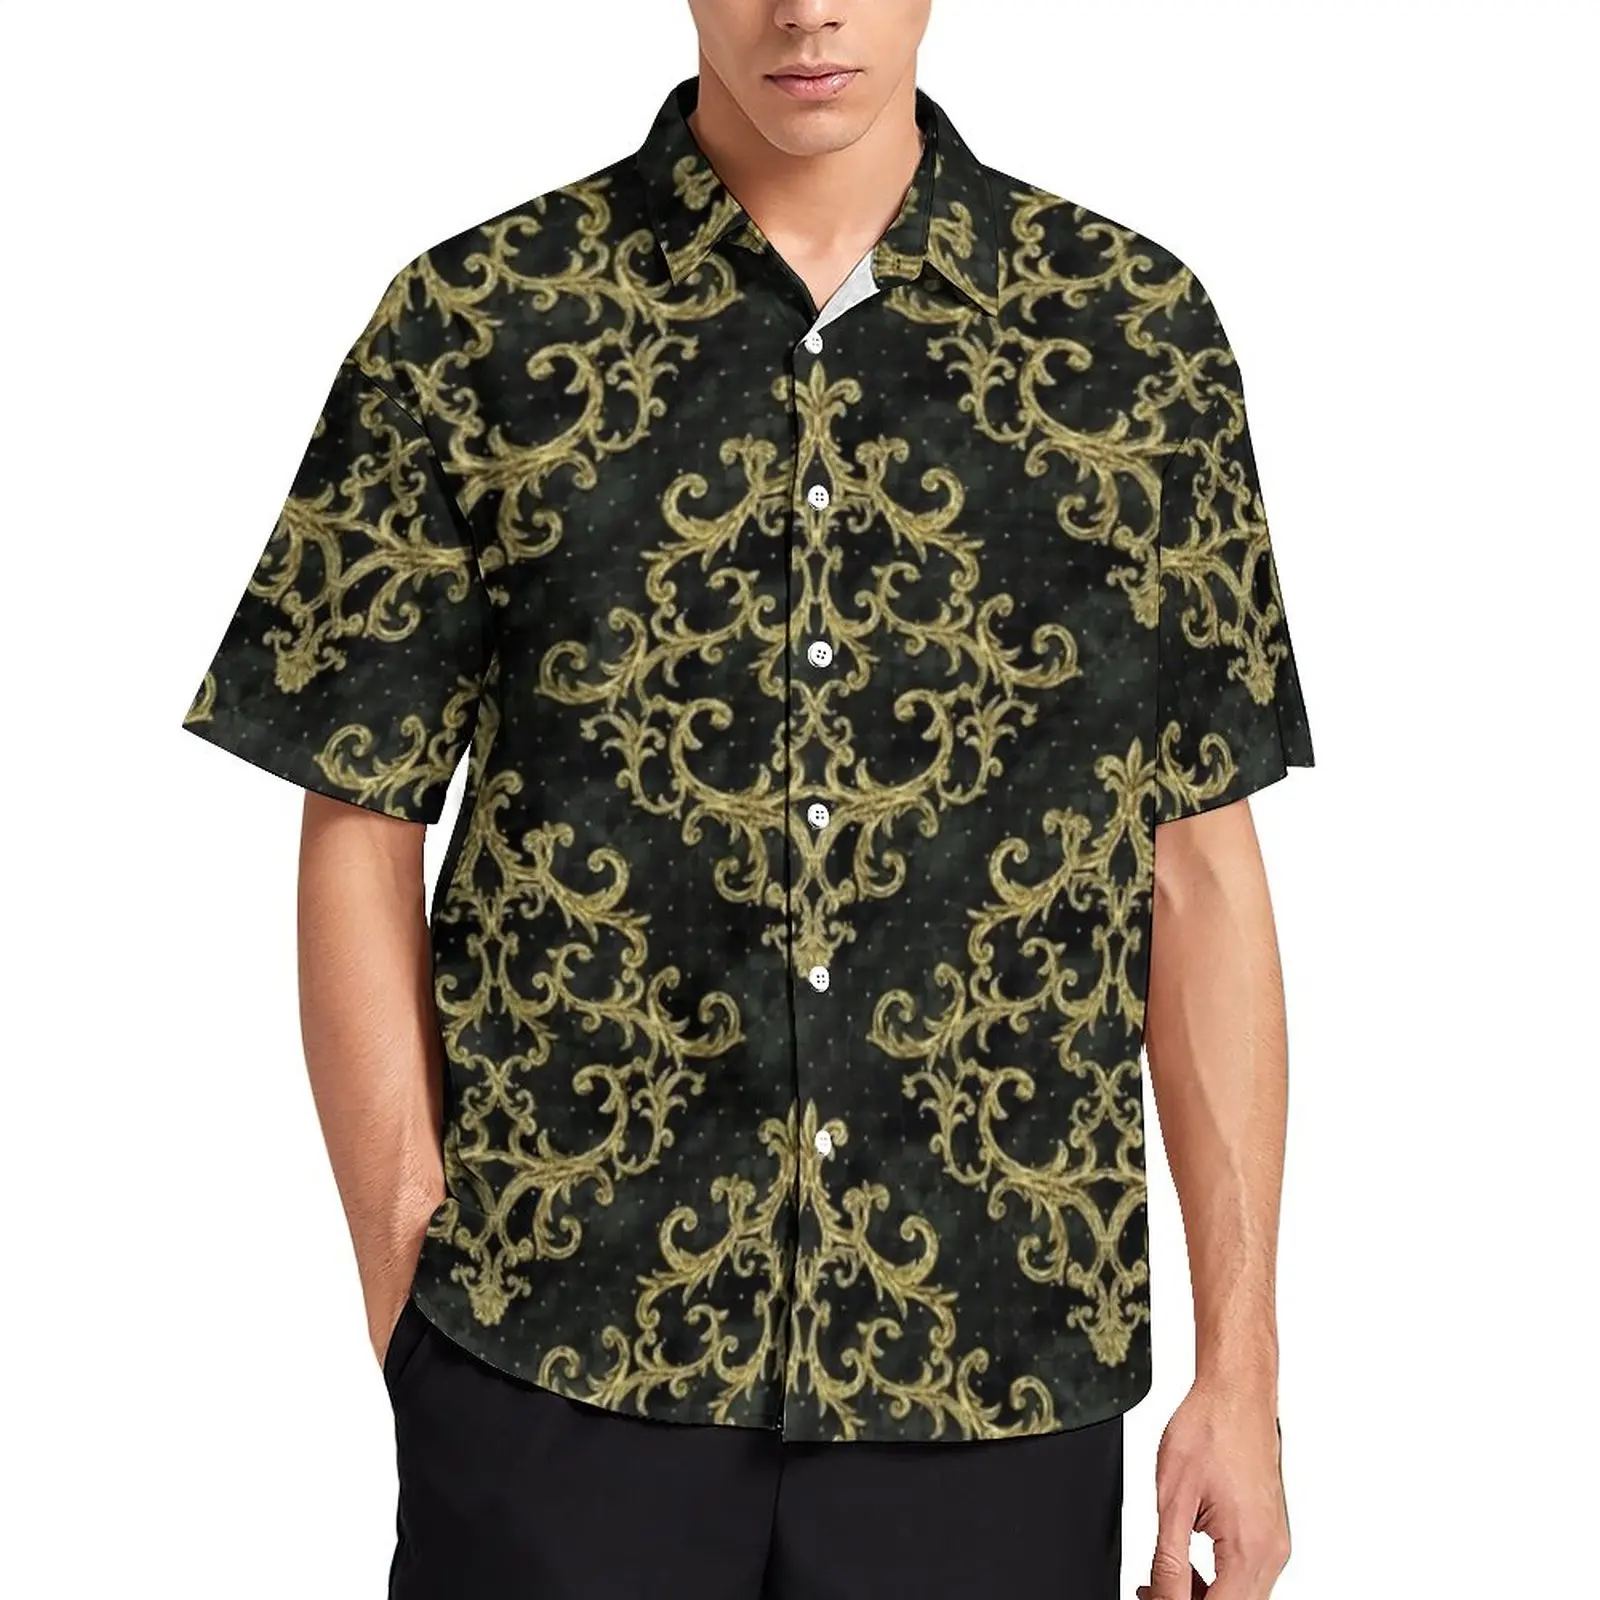 

Пляжная рубашка в стиле барокко с цветочным принтом, Гавайские повседневные рубашки с винтажным принтом, мужские модные блузки, дизайнерск...